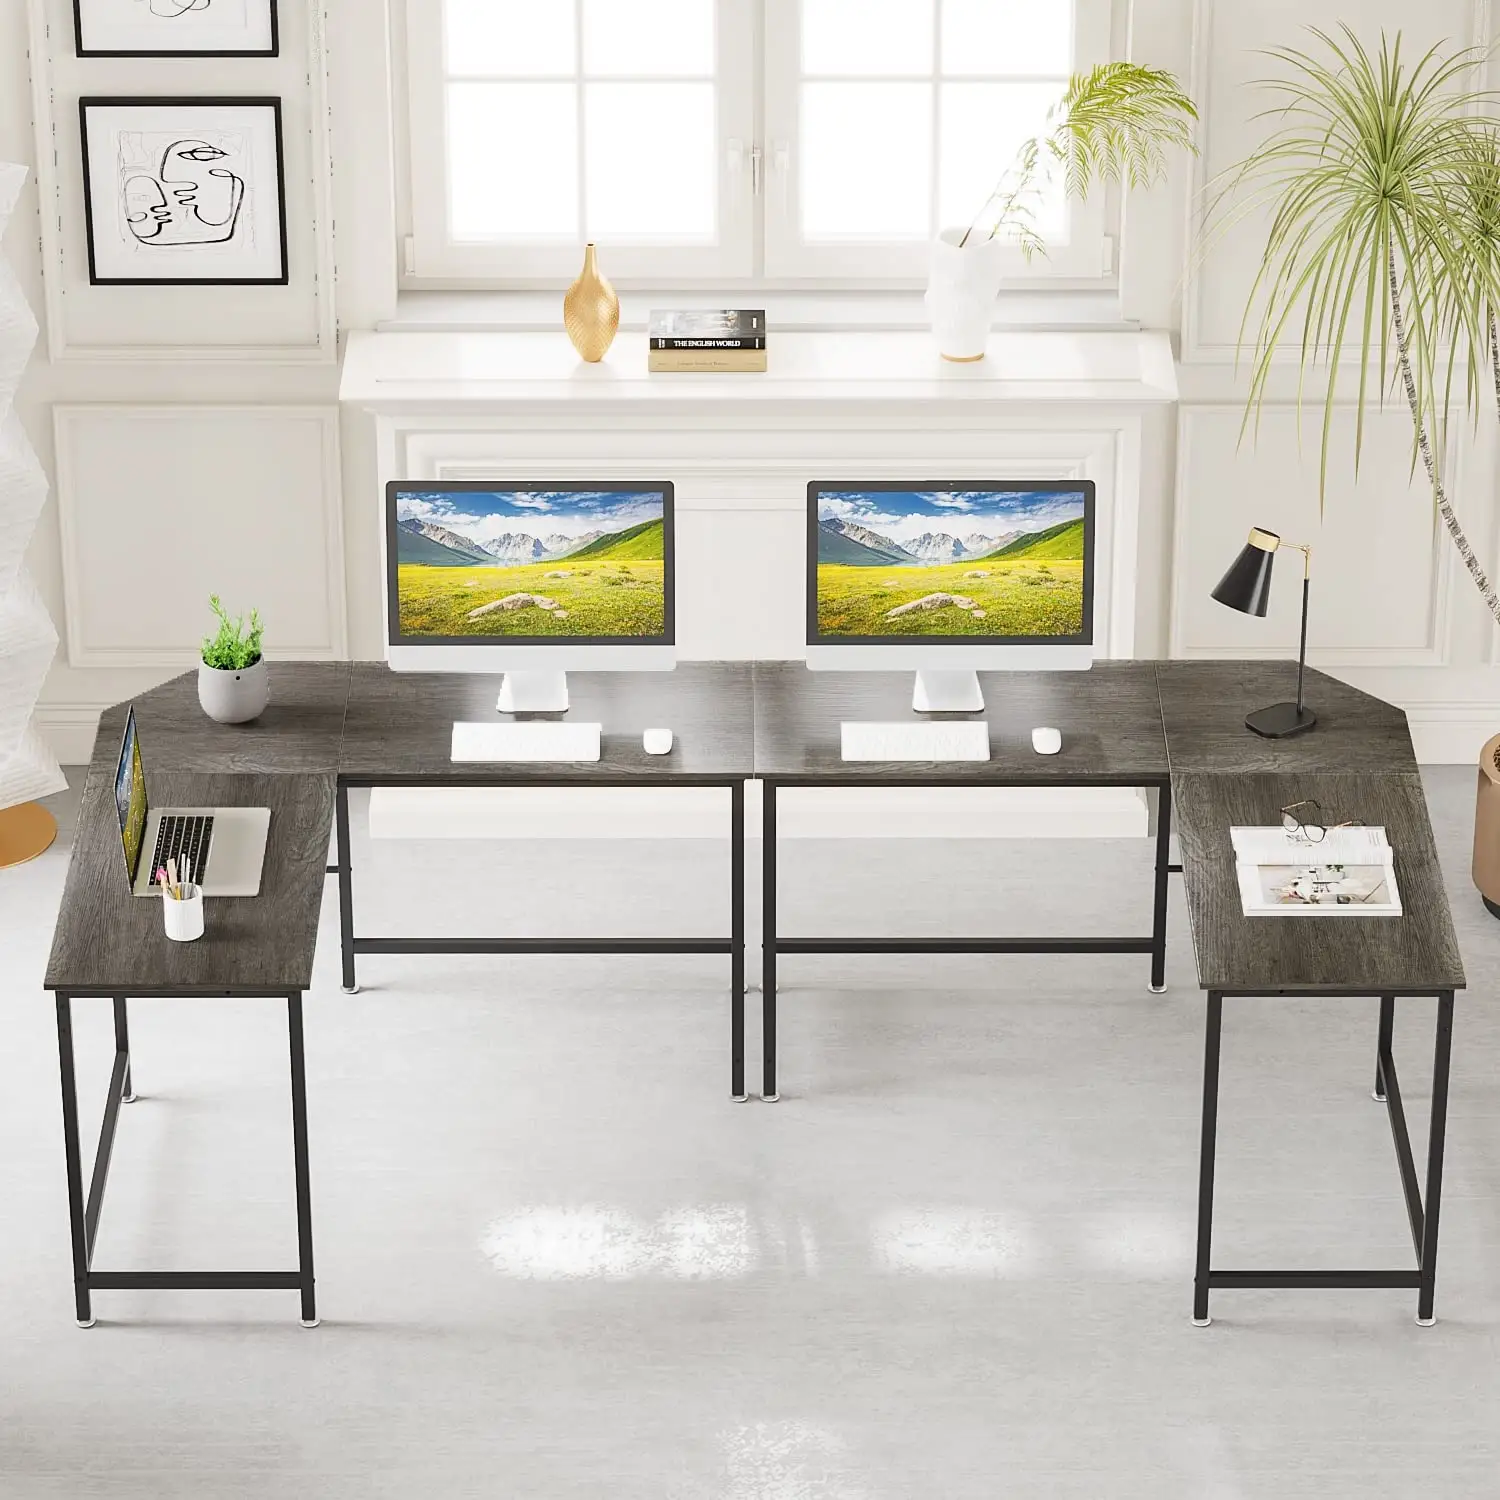 L Shaped Office Desk Gaming Table Workstation Home Large Corner Studio Corner Computer Desk for Study